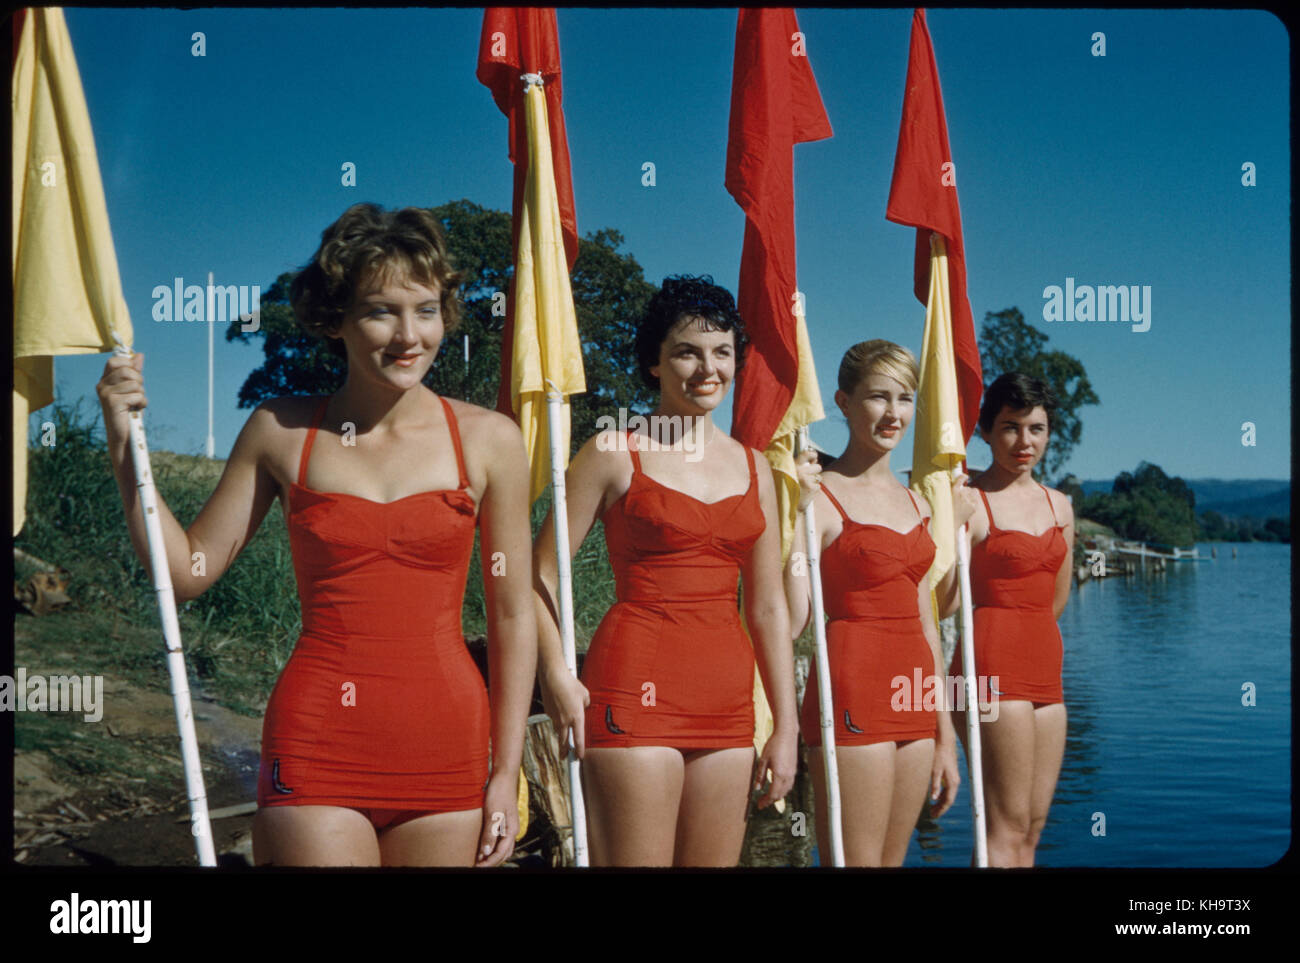 Quatre jeunes femmes adultes portant des maillots de bain rouges d'une pièce et portant des drapeaux rouges et jaunes, Australie, 1960 Banque D'Images